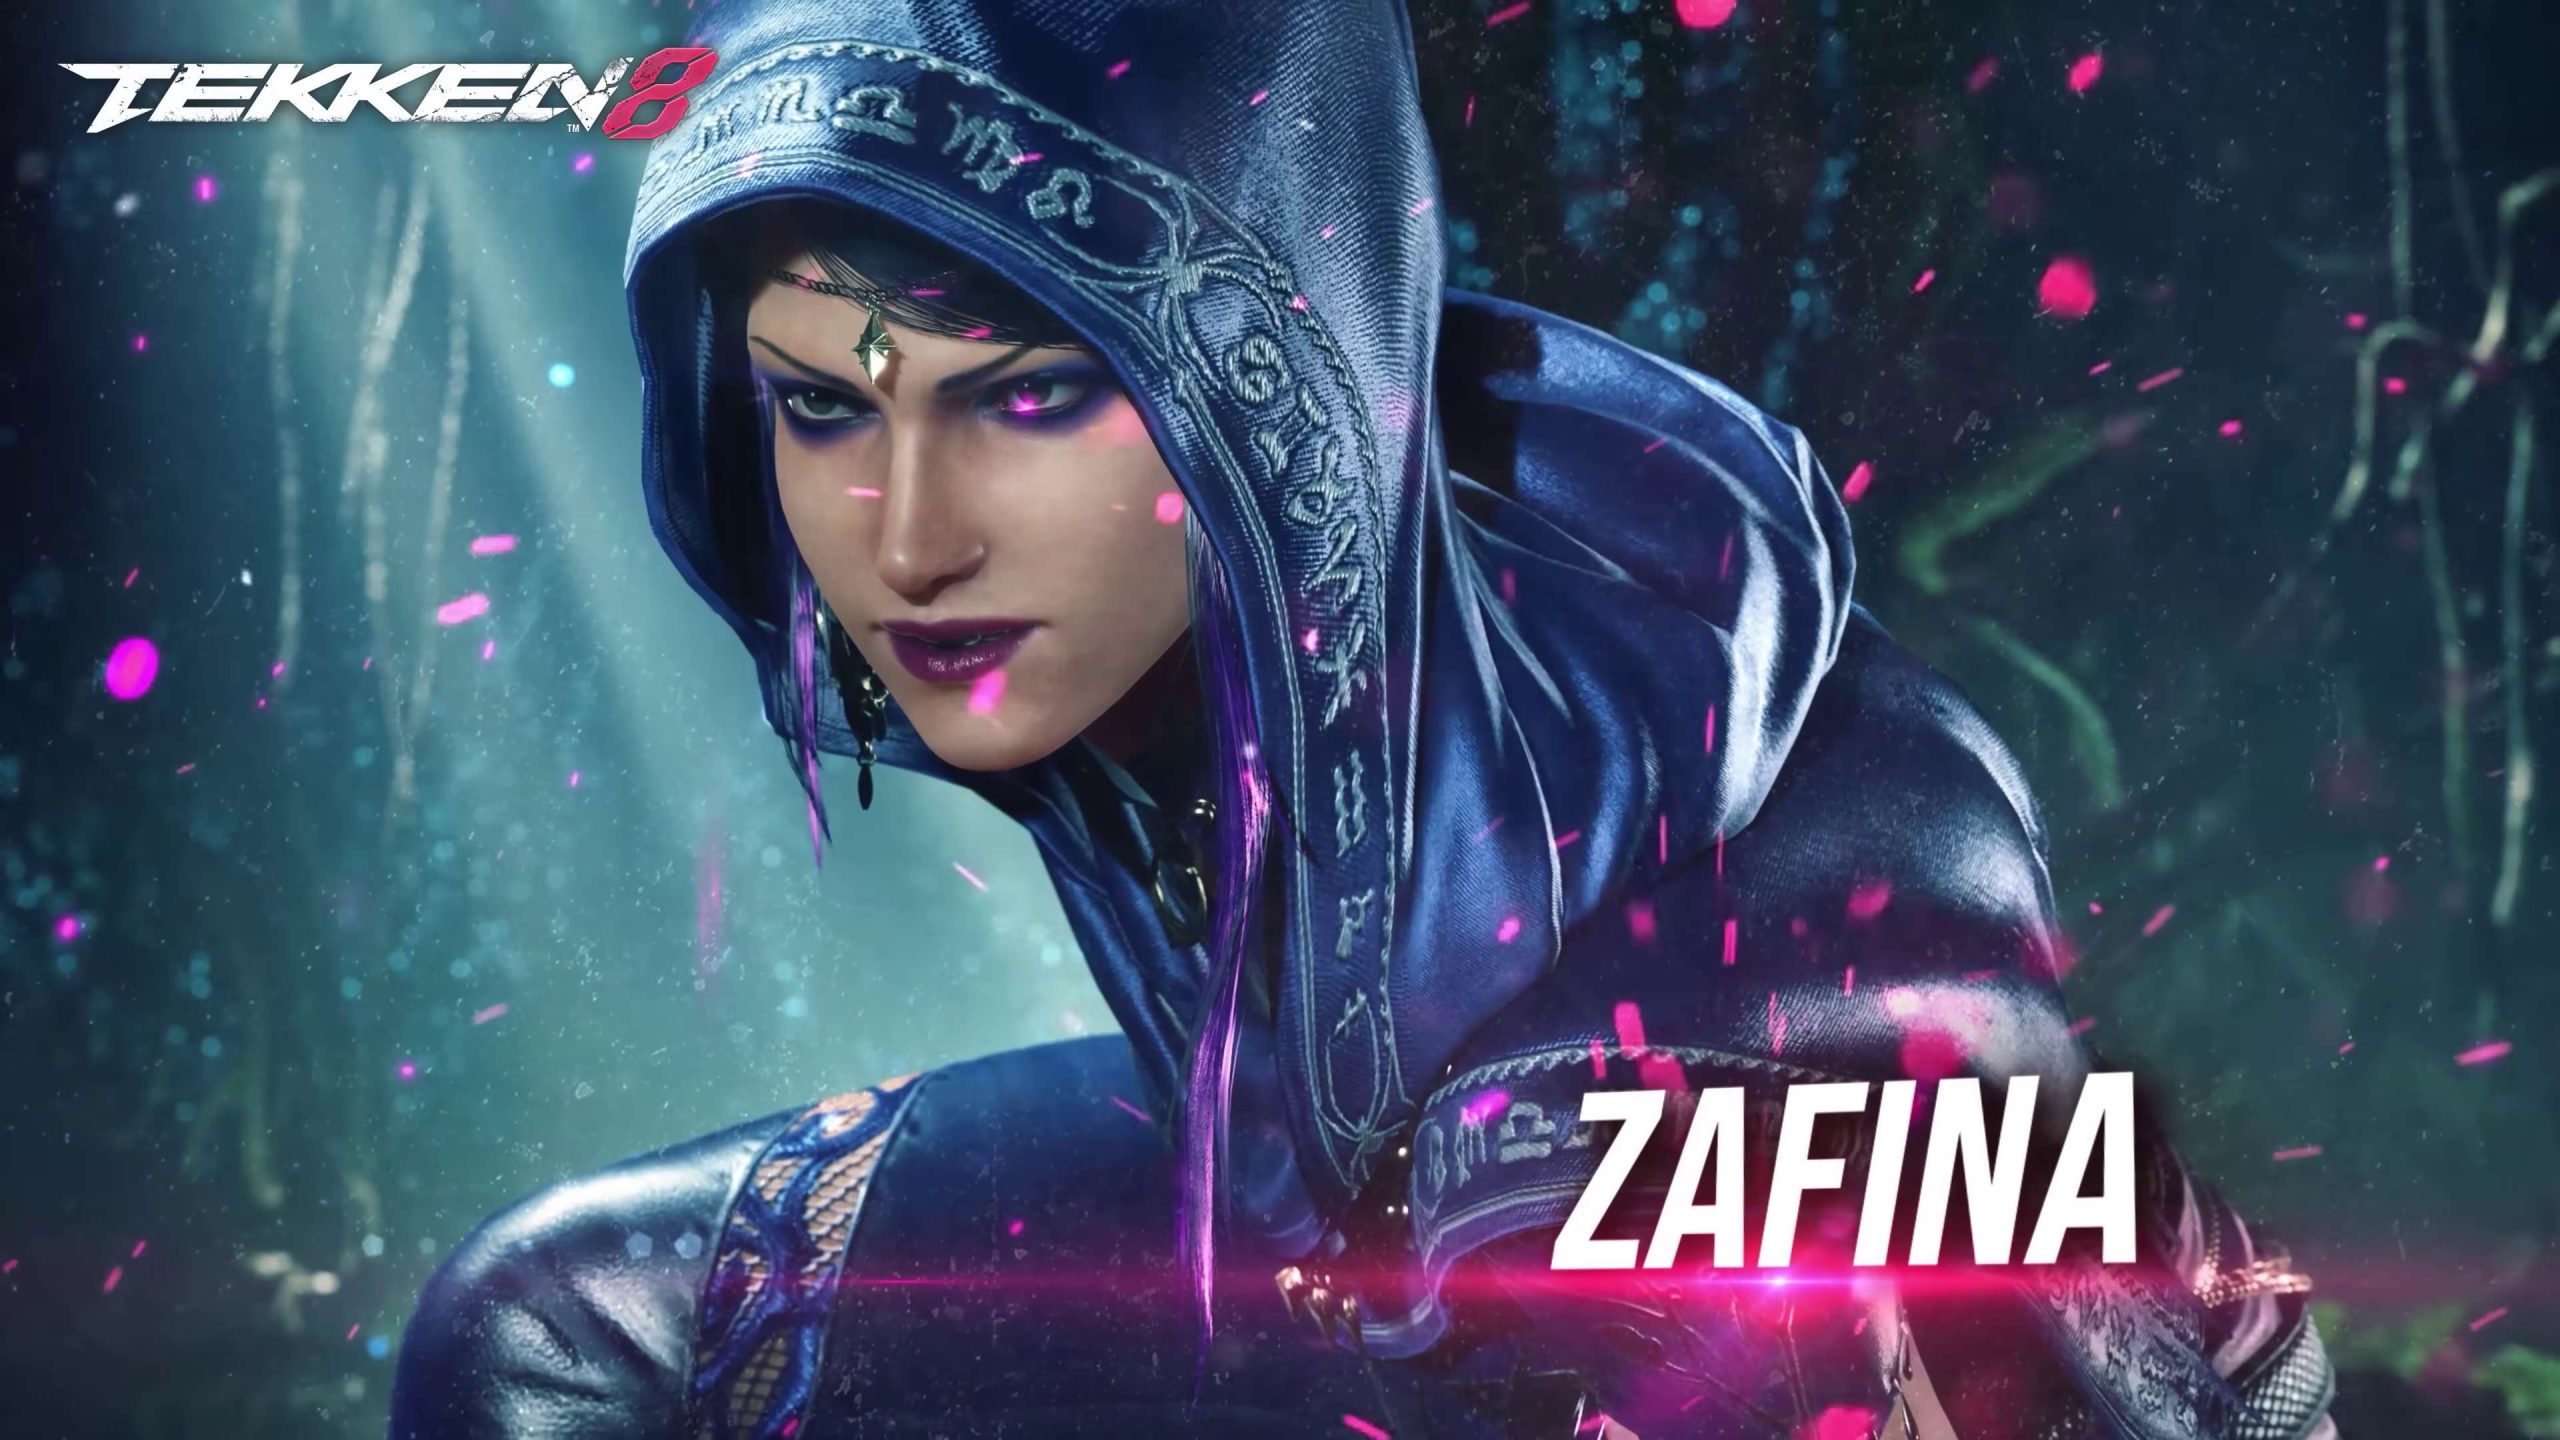 Zafina présente son style de combat dans Tekken 8